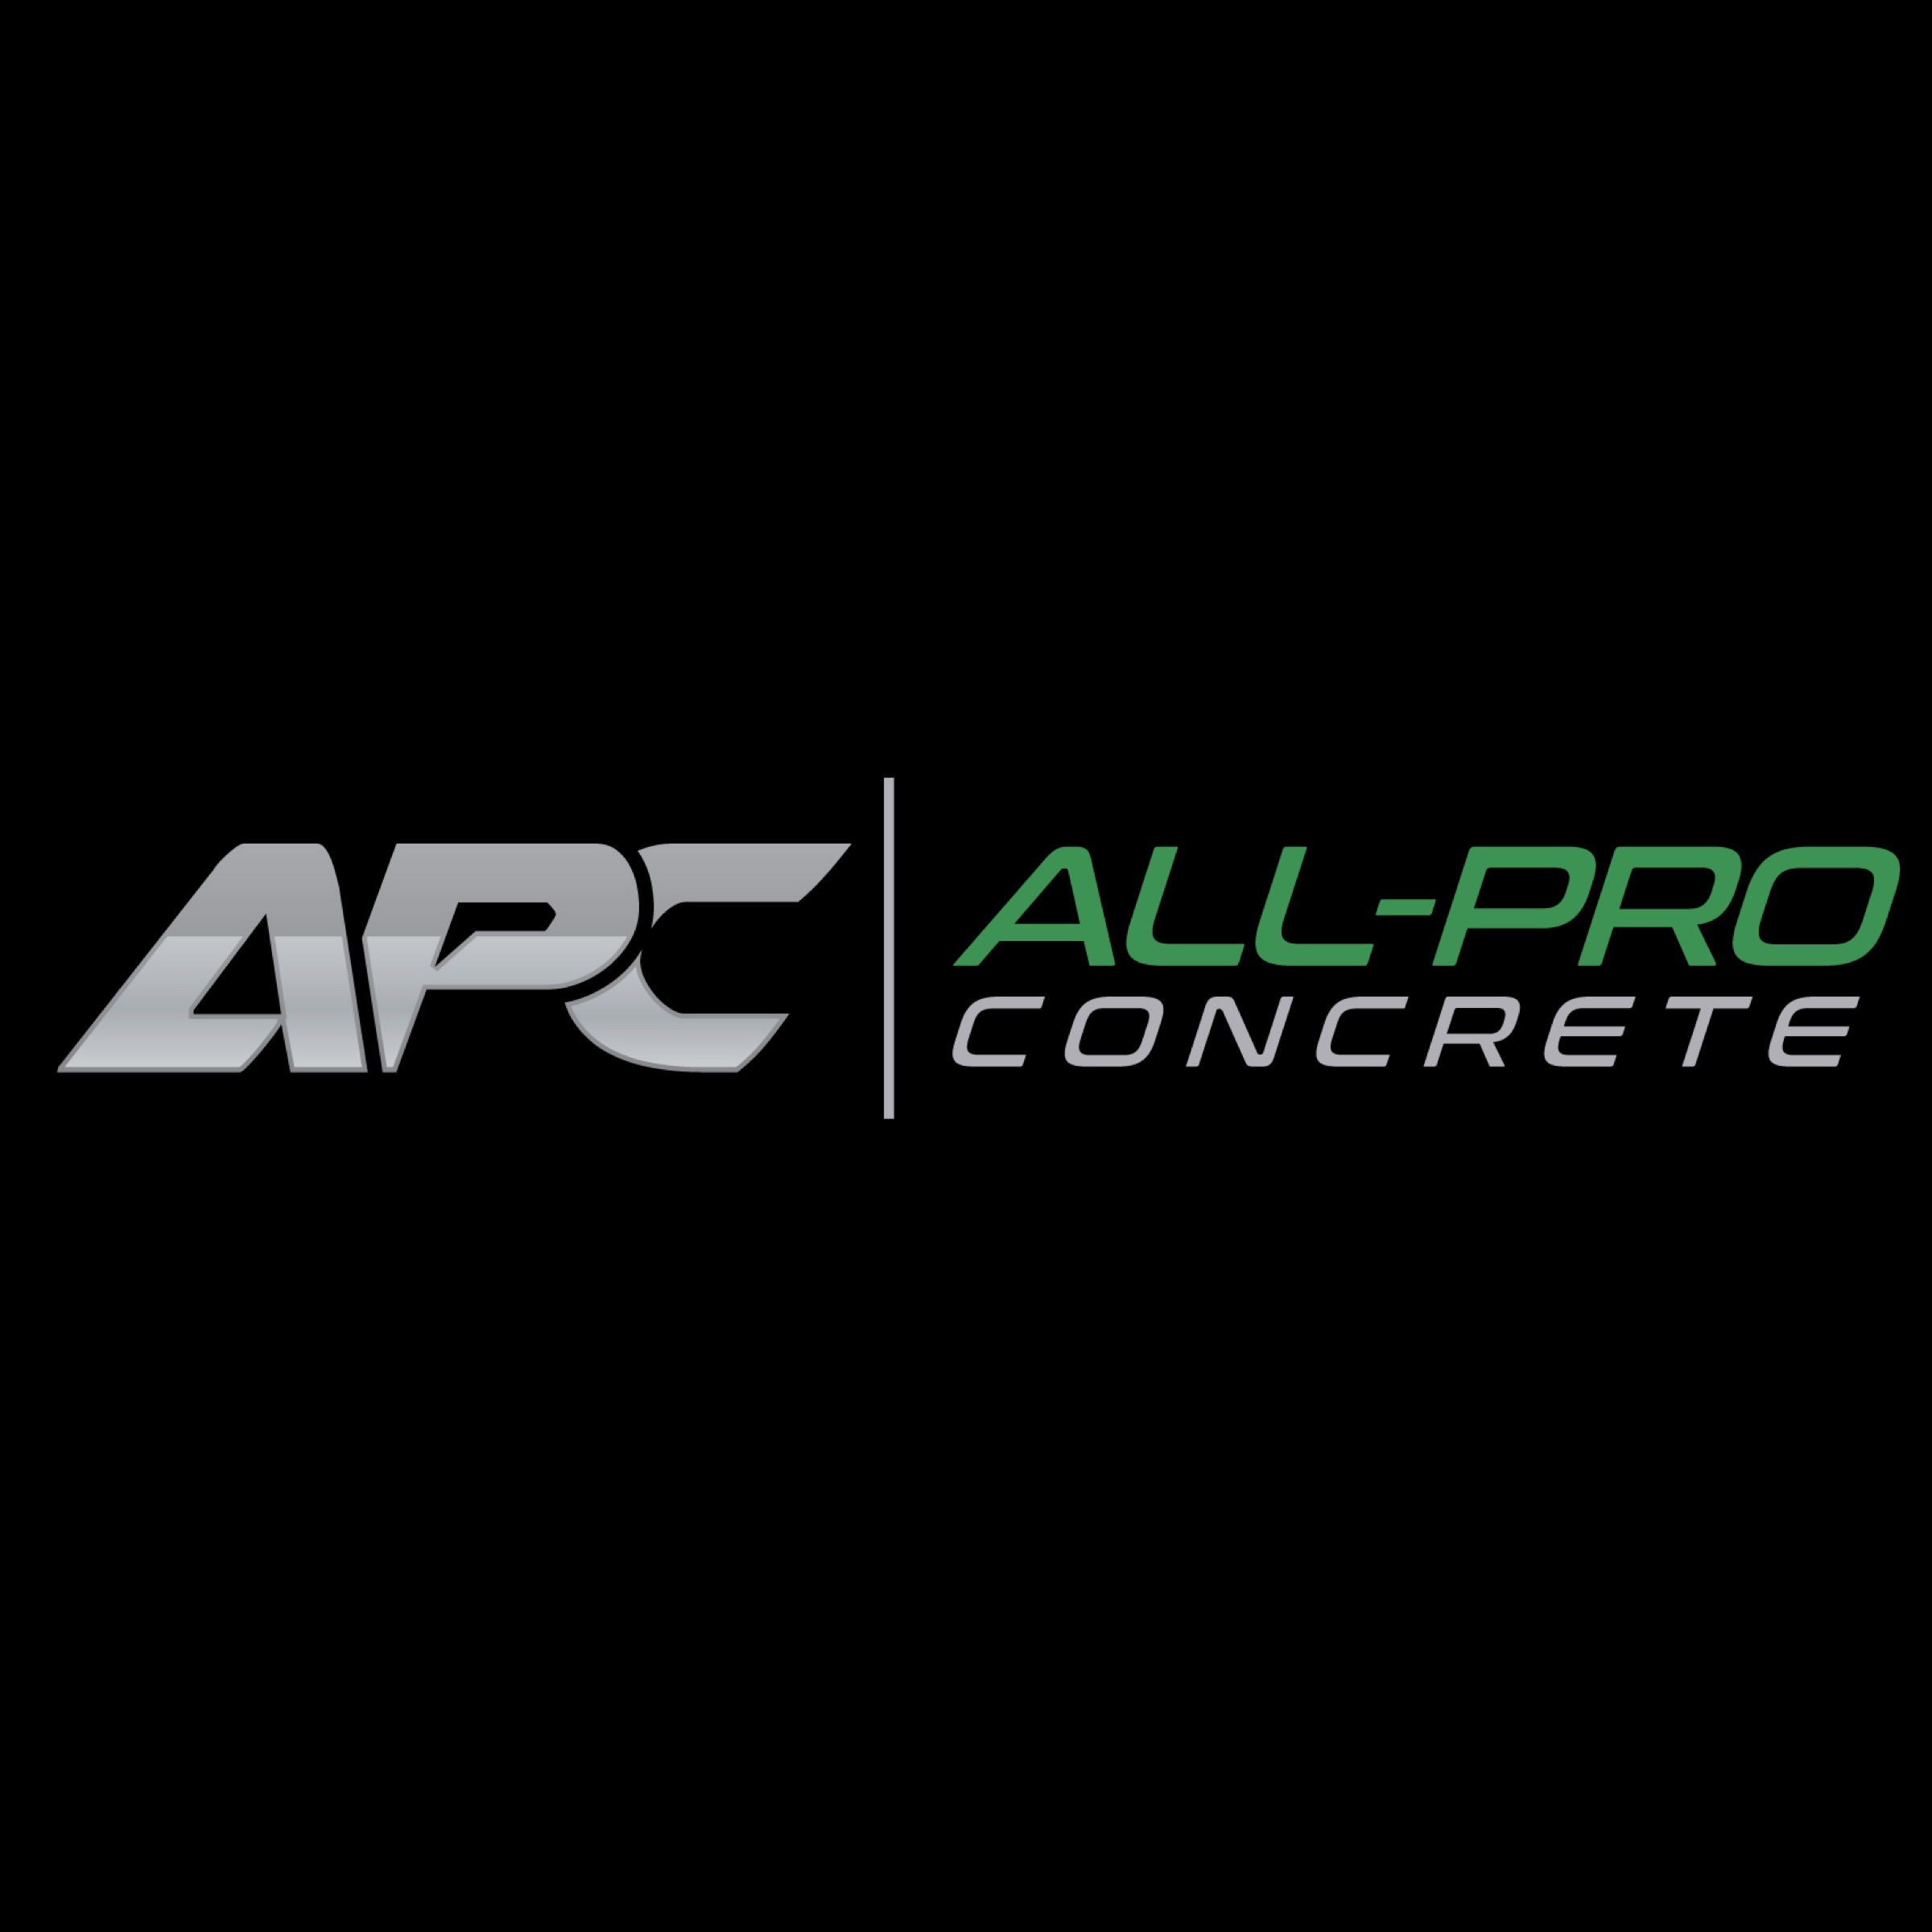 All-Pro Concrete Logo